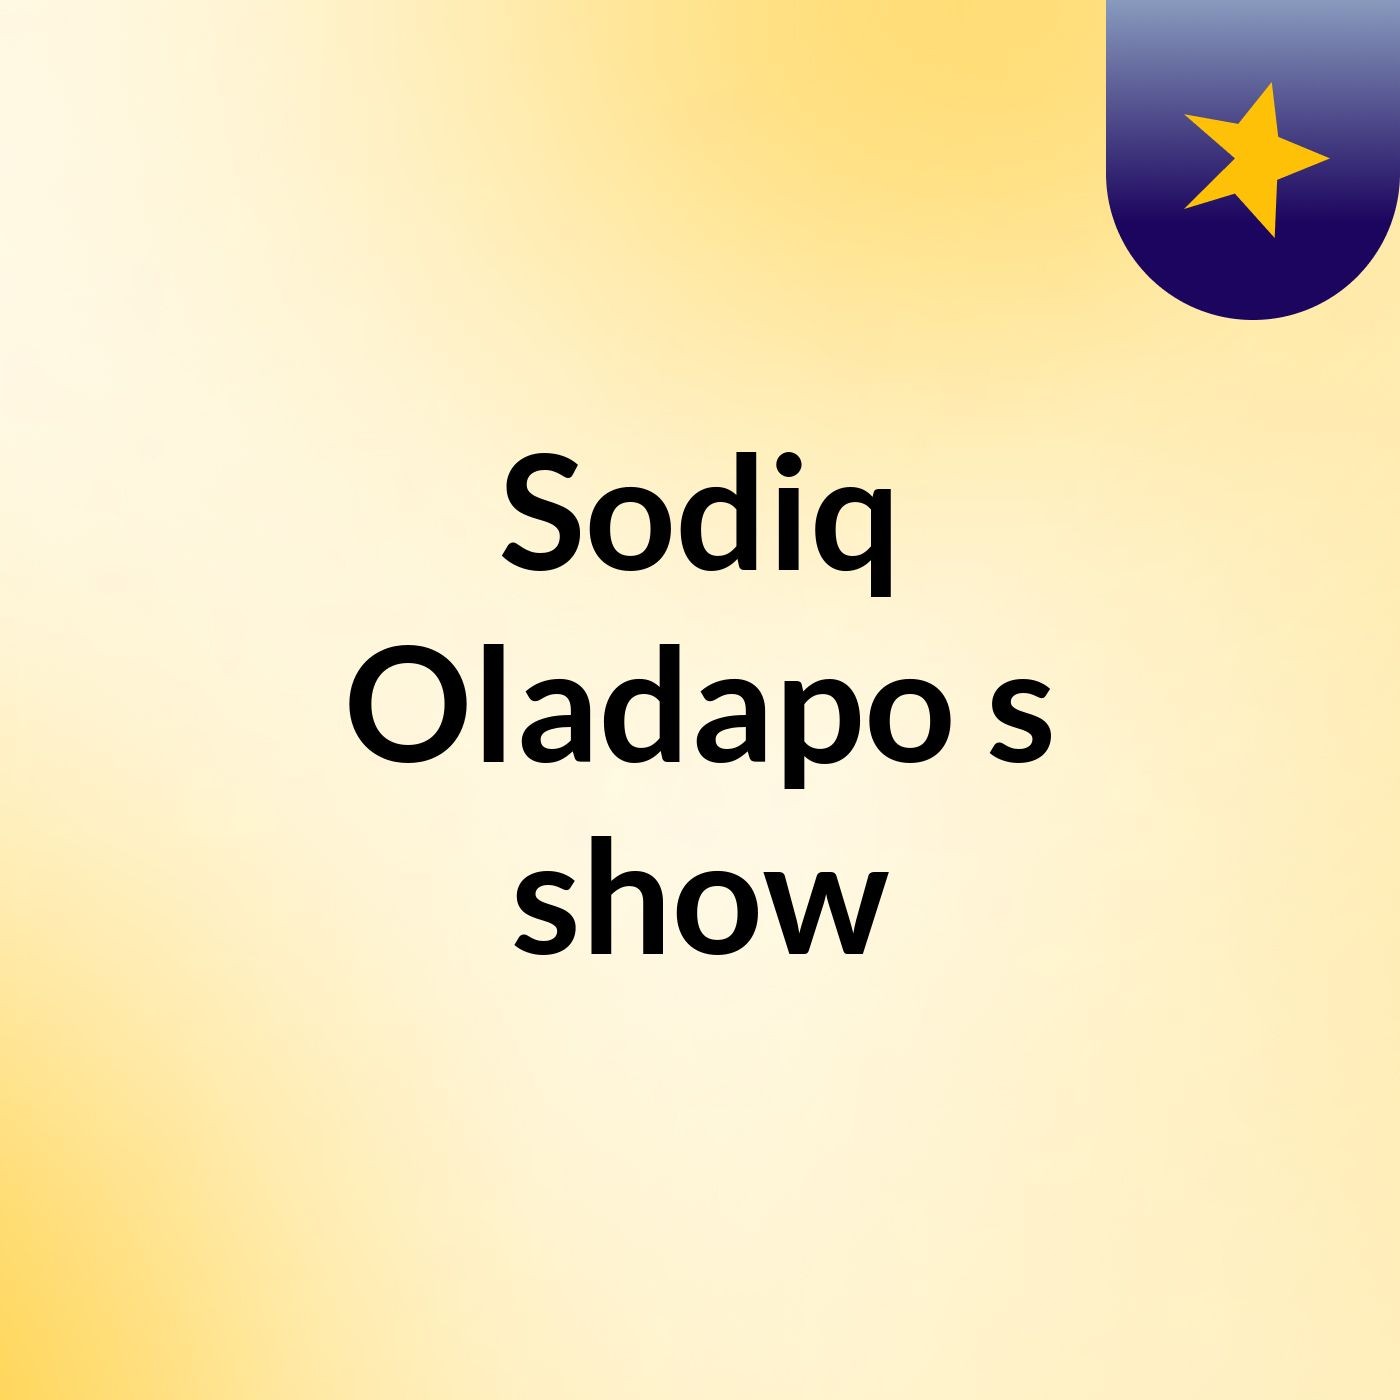 Episode 3 - Sodiq Oladapo's show